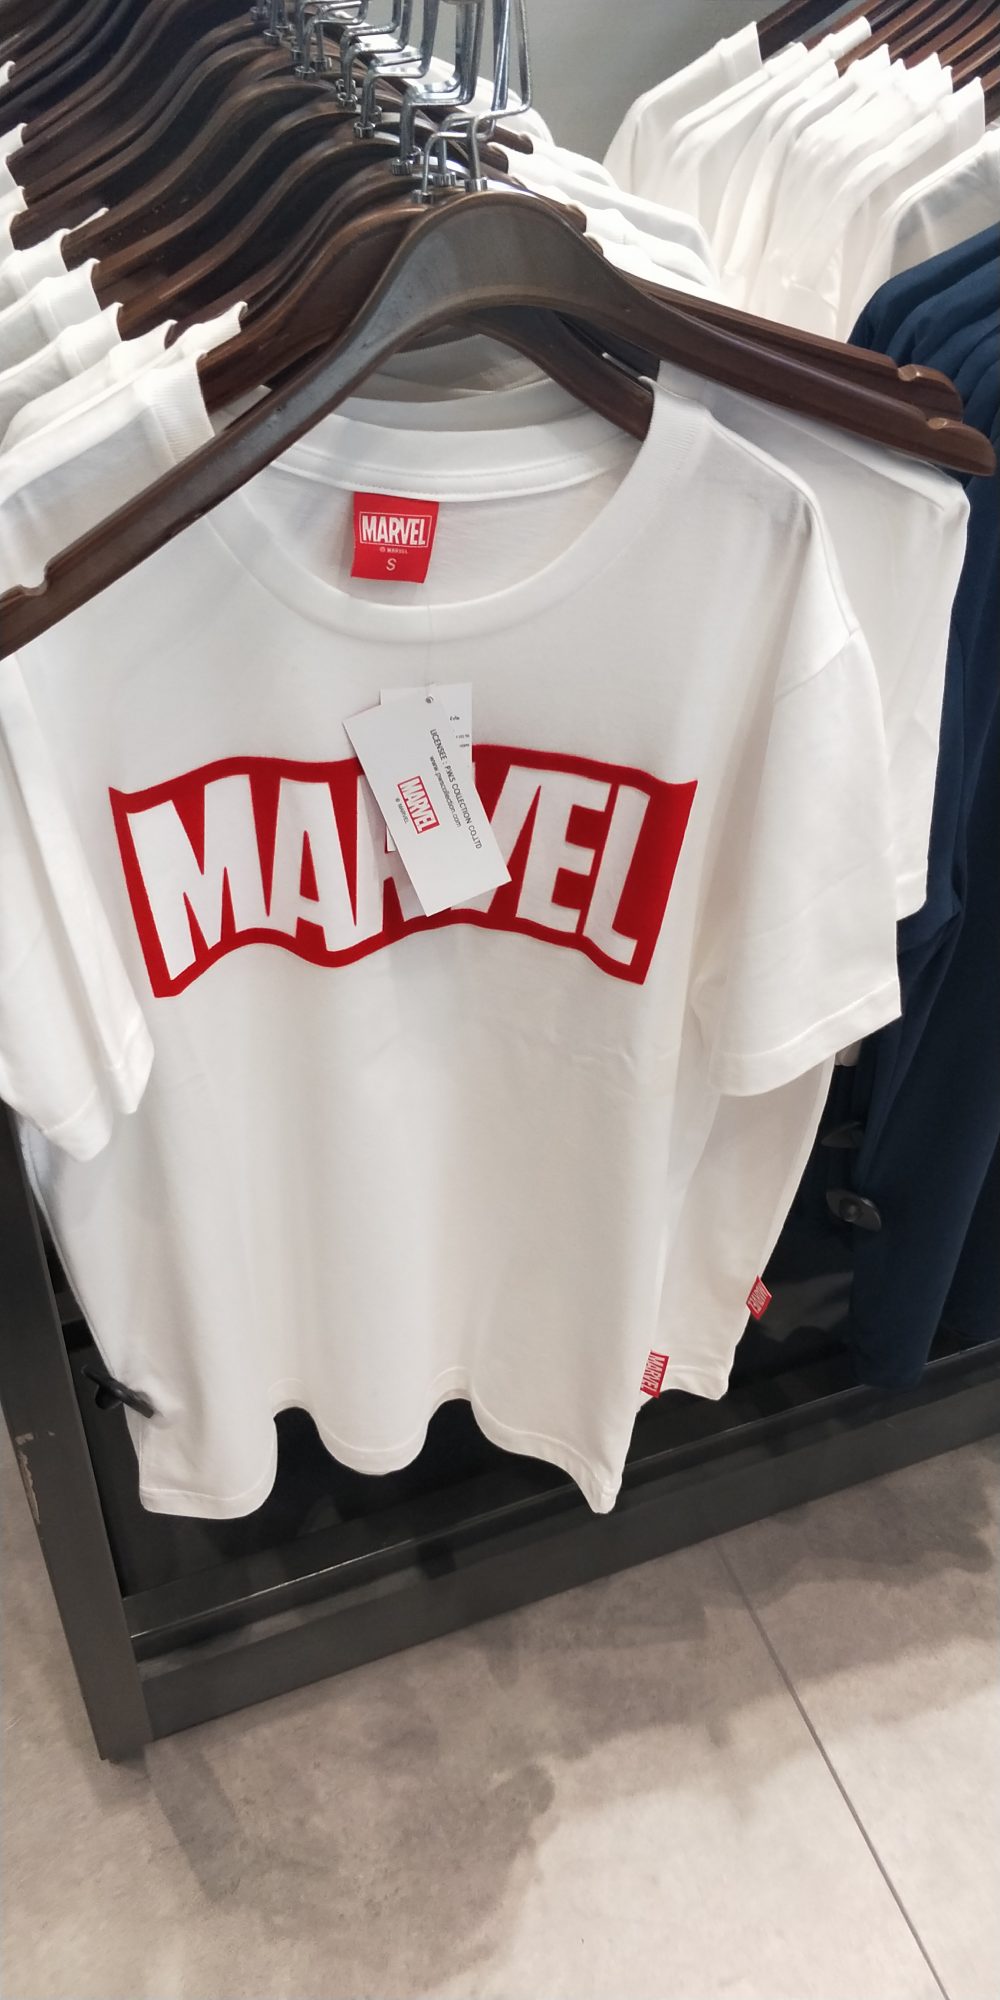 Marvel泰國漫威基地 主題周邊商品一覽 衣服周邊 - Marvel 主題樂園 - 敗家達人推薦